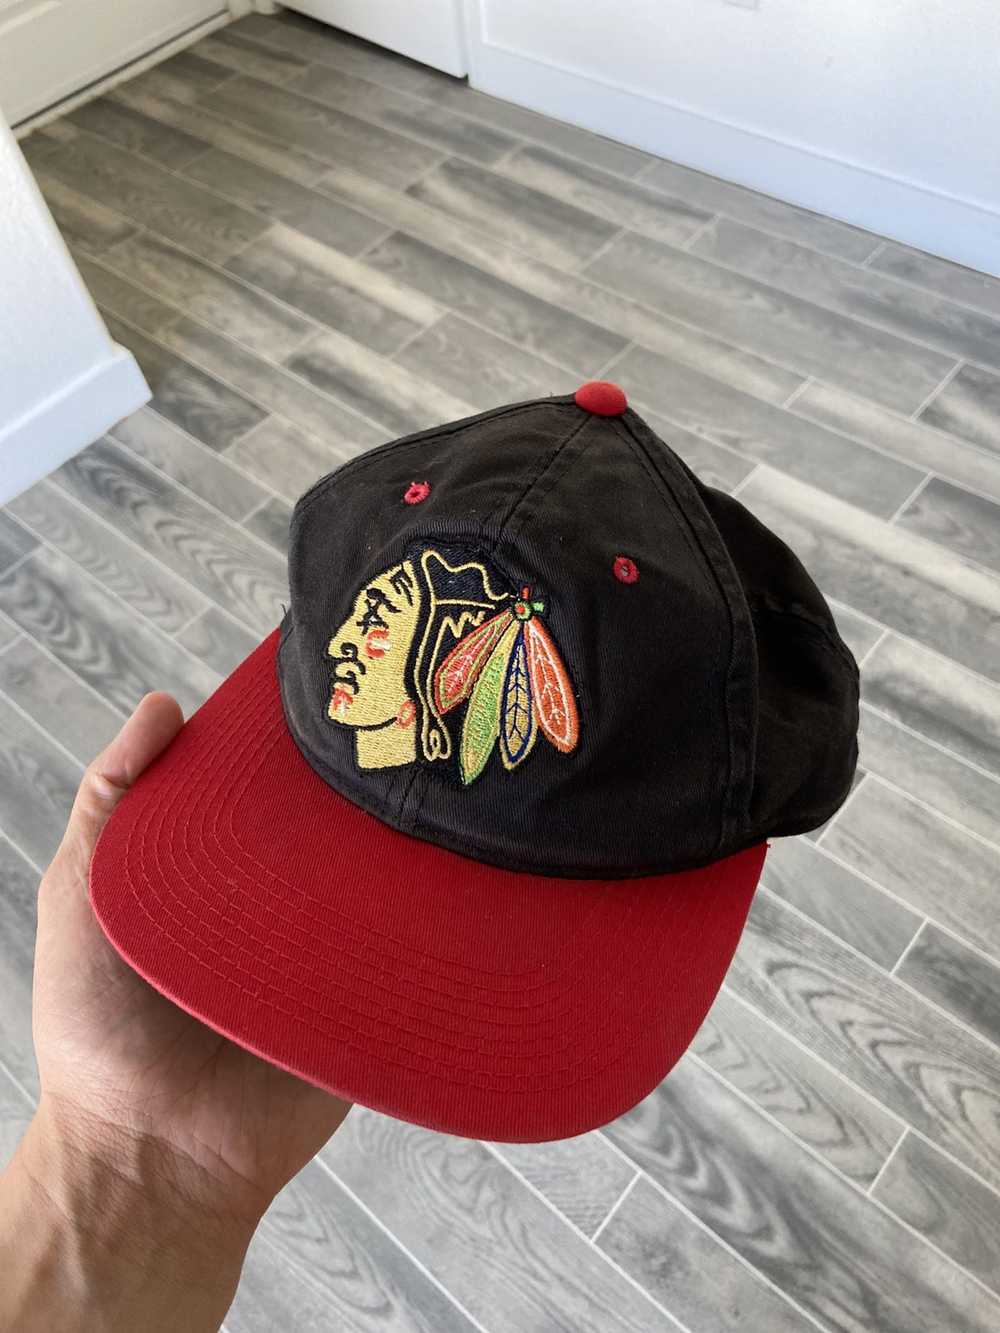 Vintage Vintage Chicago Blackhawks Hat - image 1